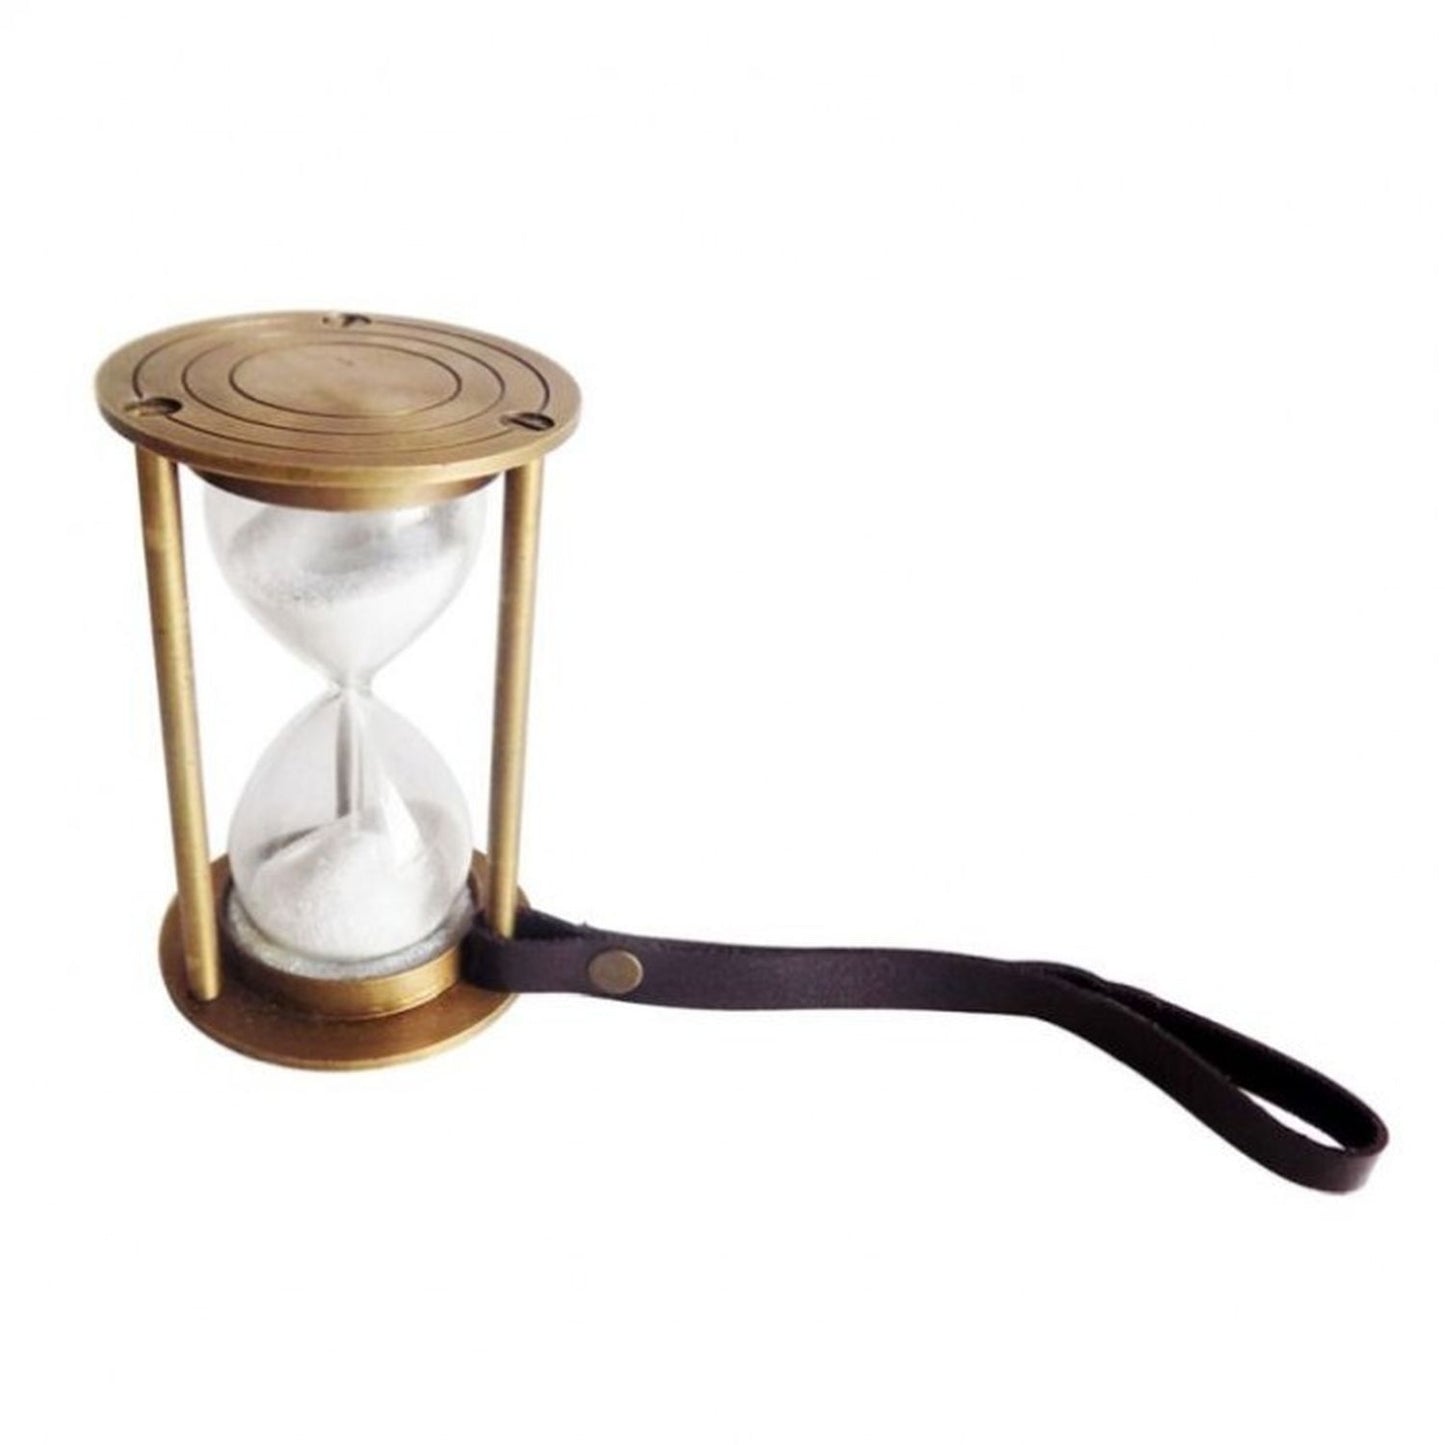 Regency International 9" Brass/Glass Hour Glass Ornament with Strap